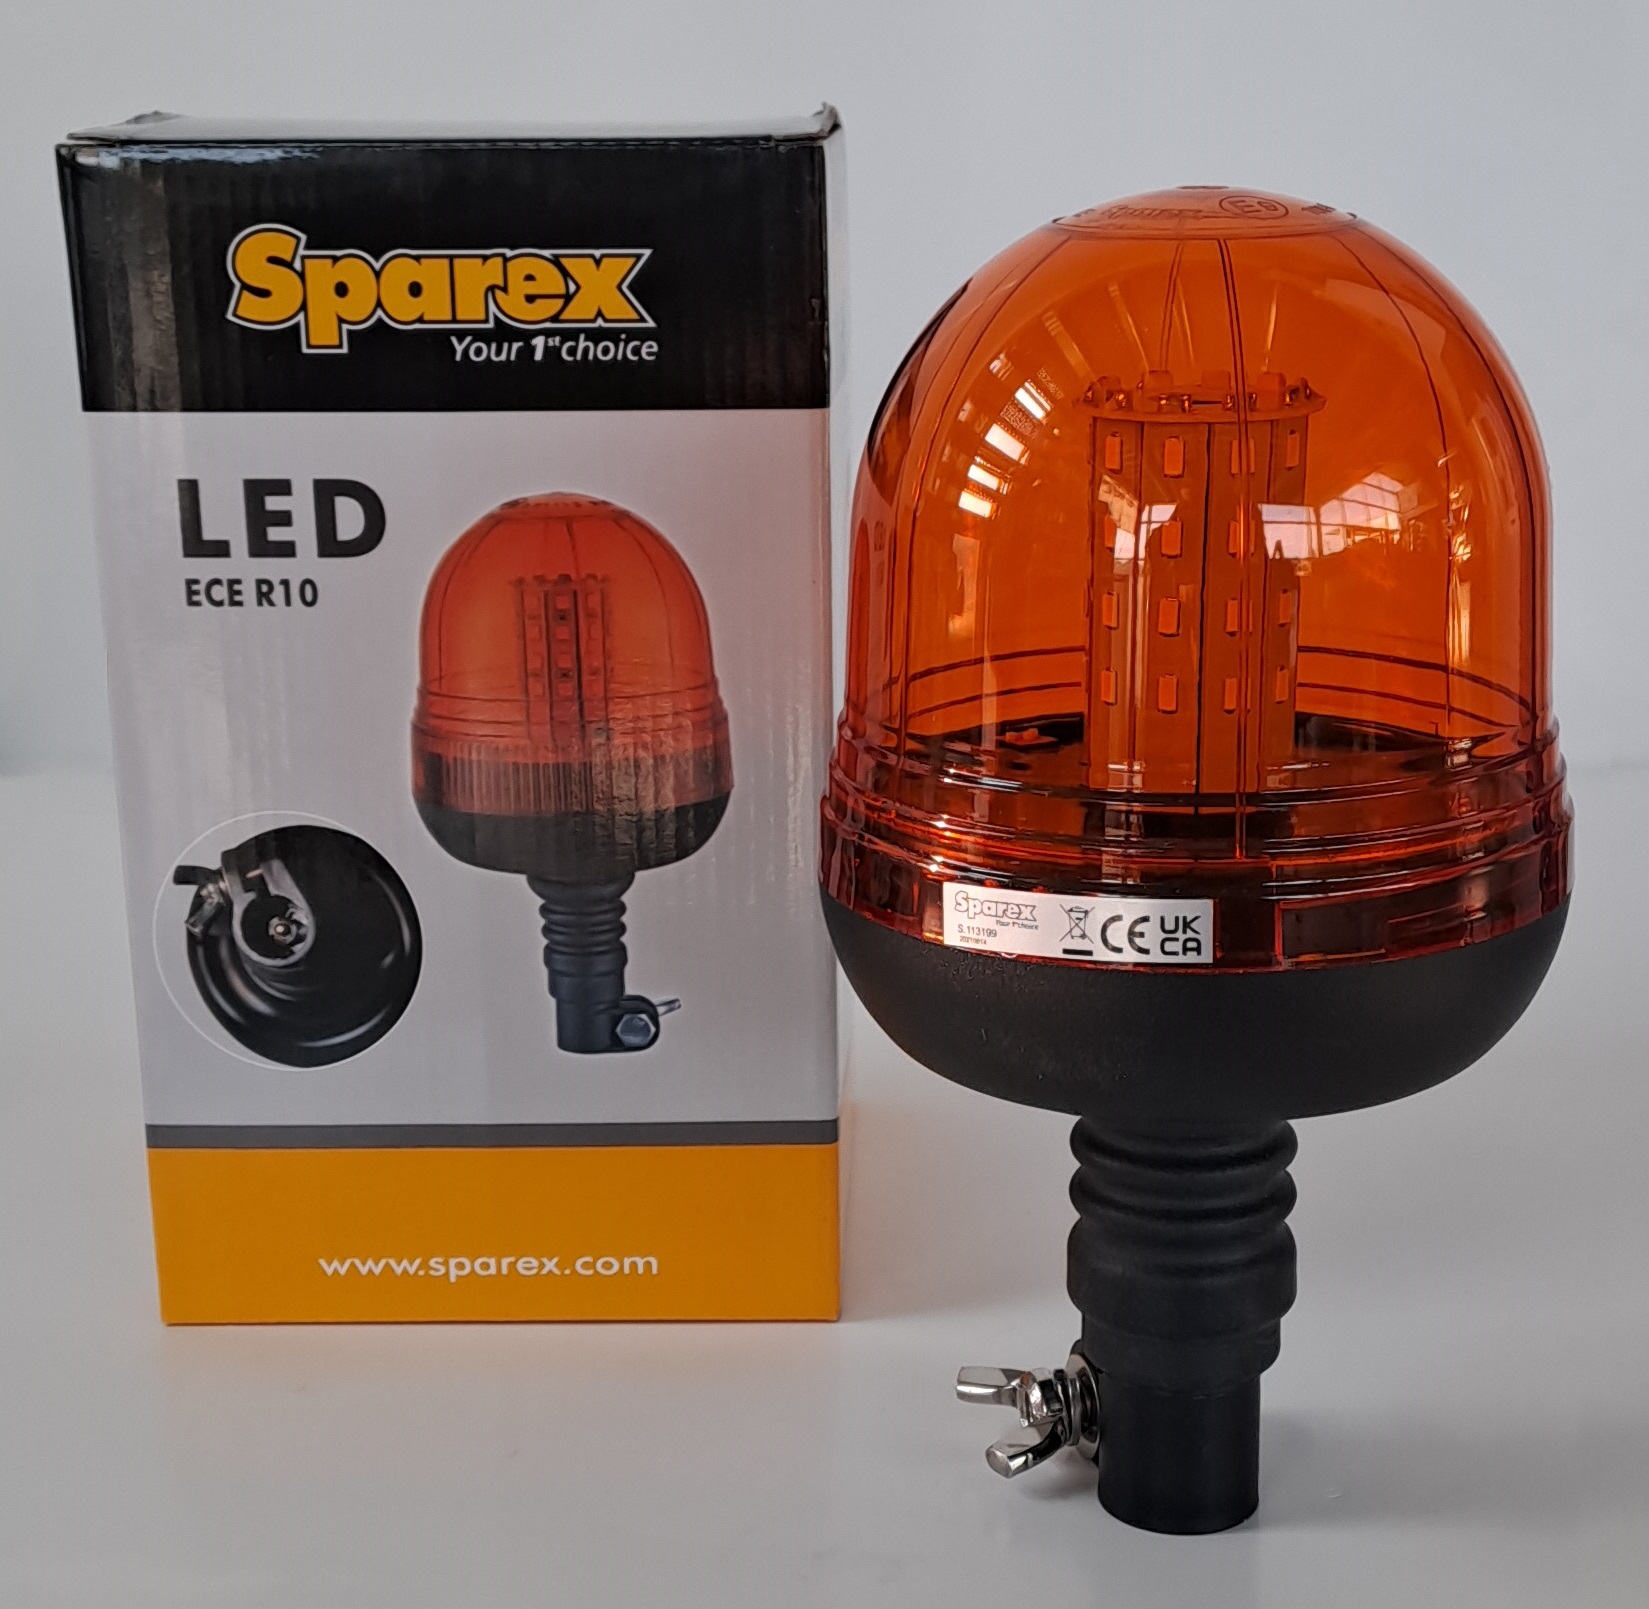 LED Lampeggiante (Arancione), Interferenza: Class 3, Perno